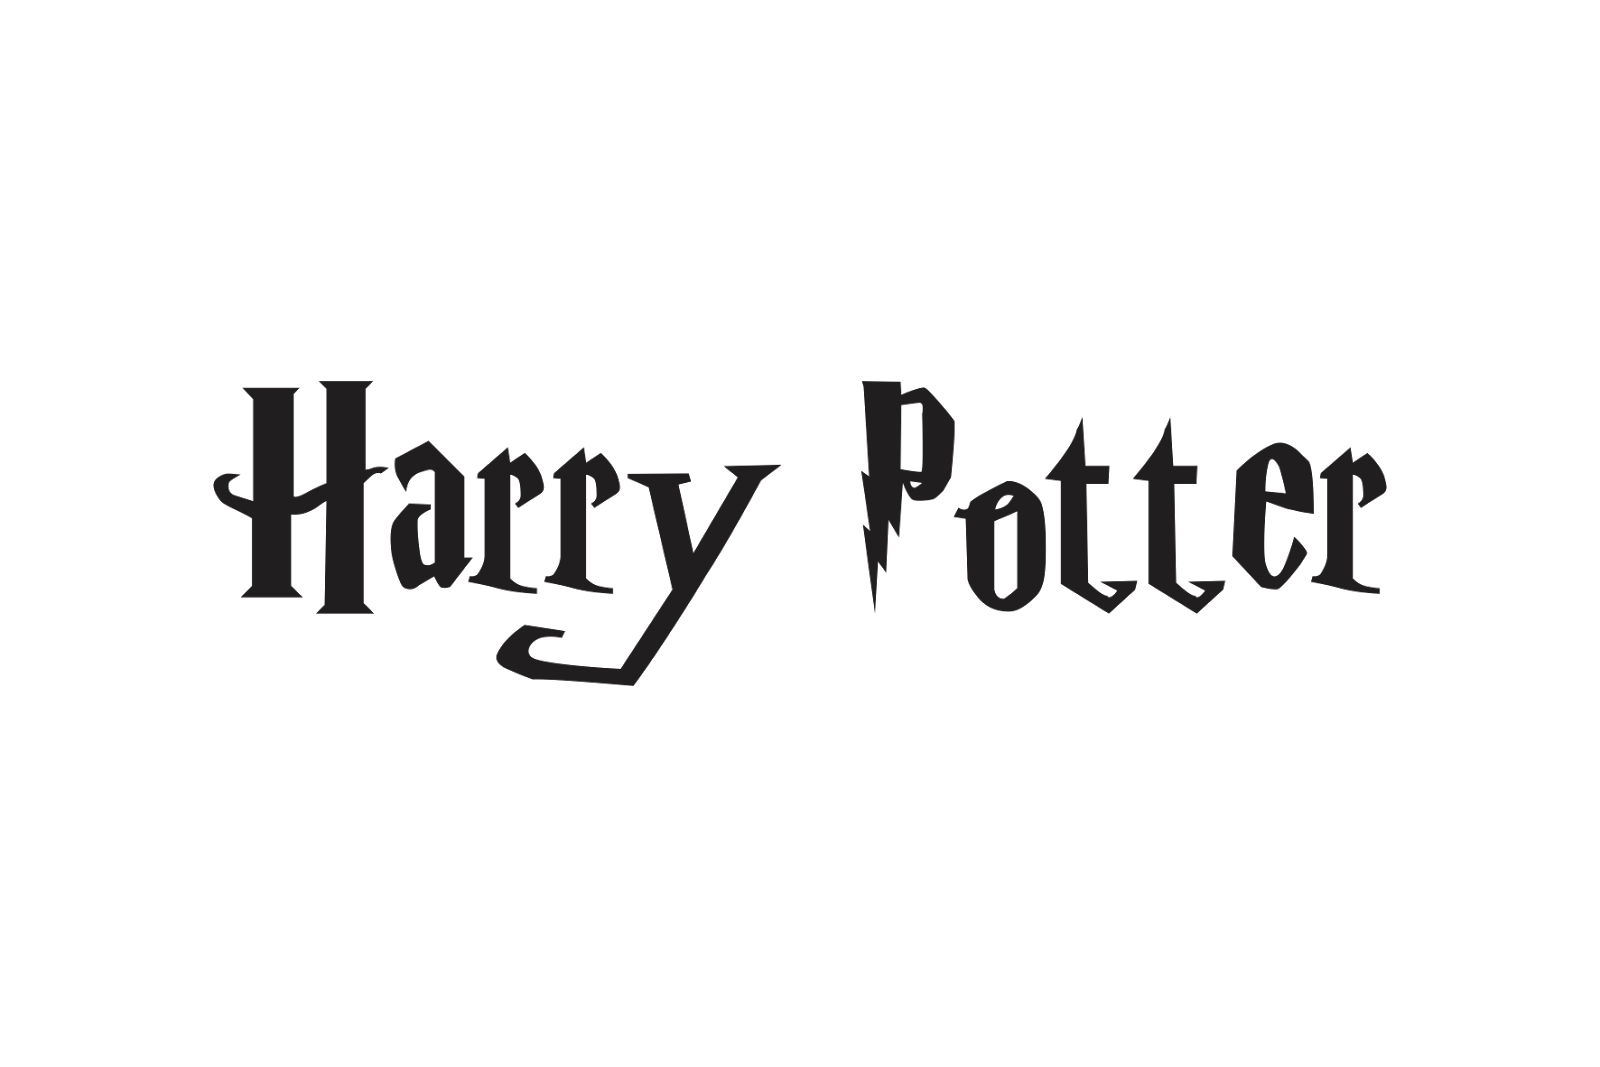 Download Harry Potter Logo PNG, Harry Potter Logo Transparent ...